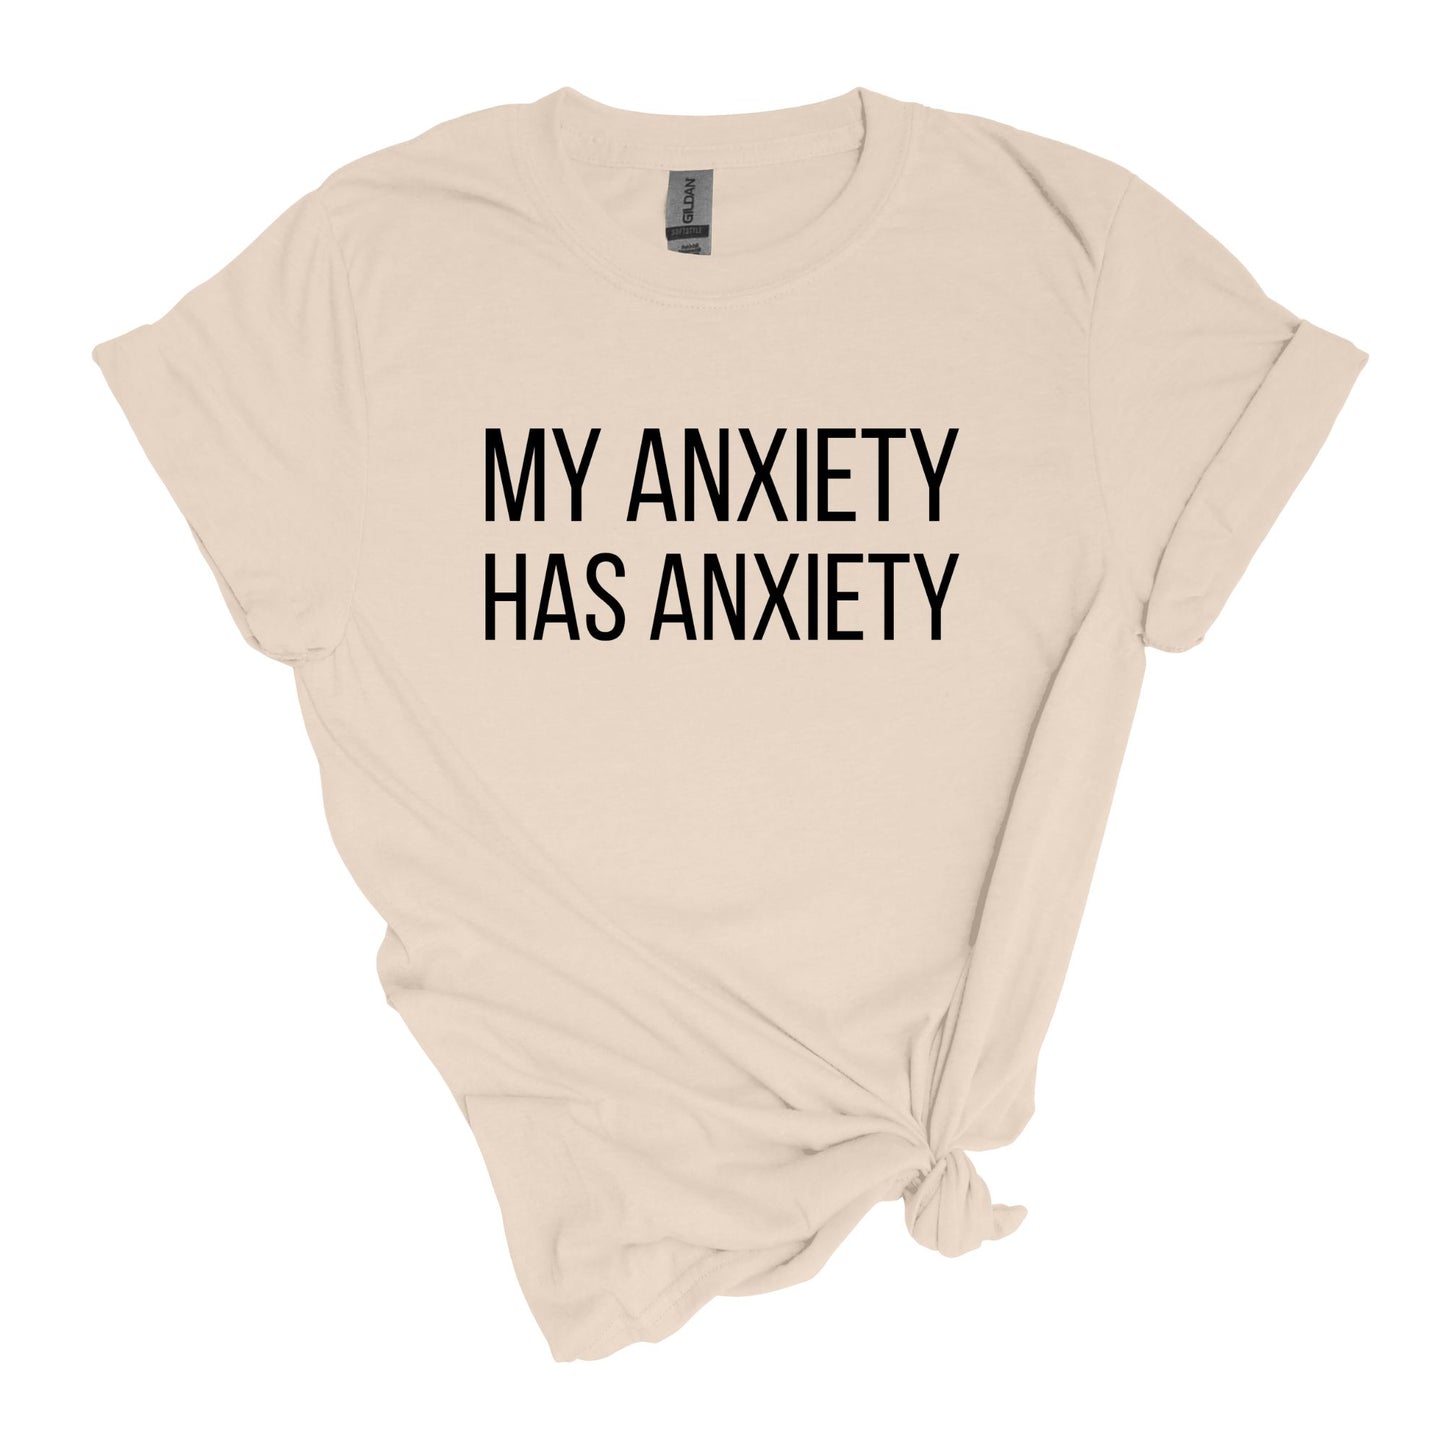 Mon anxiété a de l'anxiété - T-shirt de style doux pour adultes 